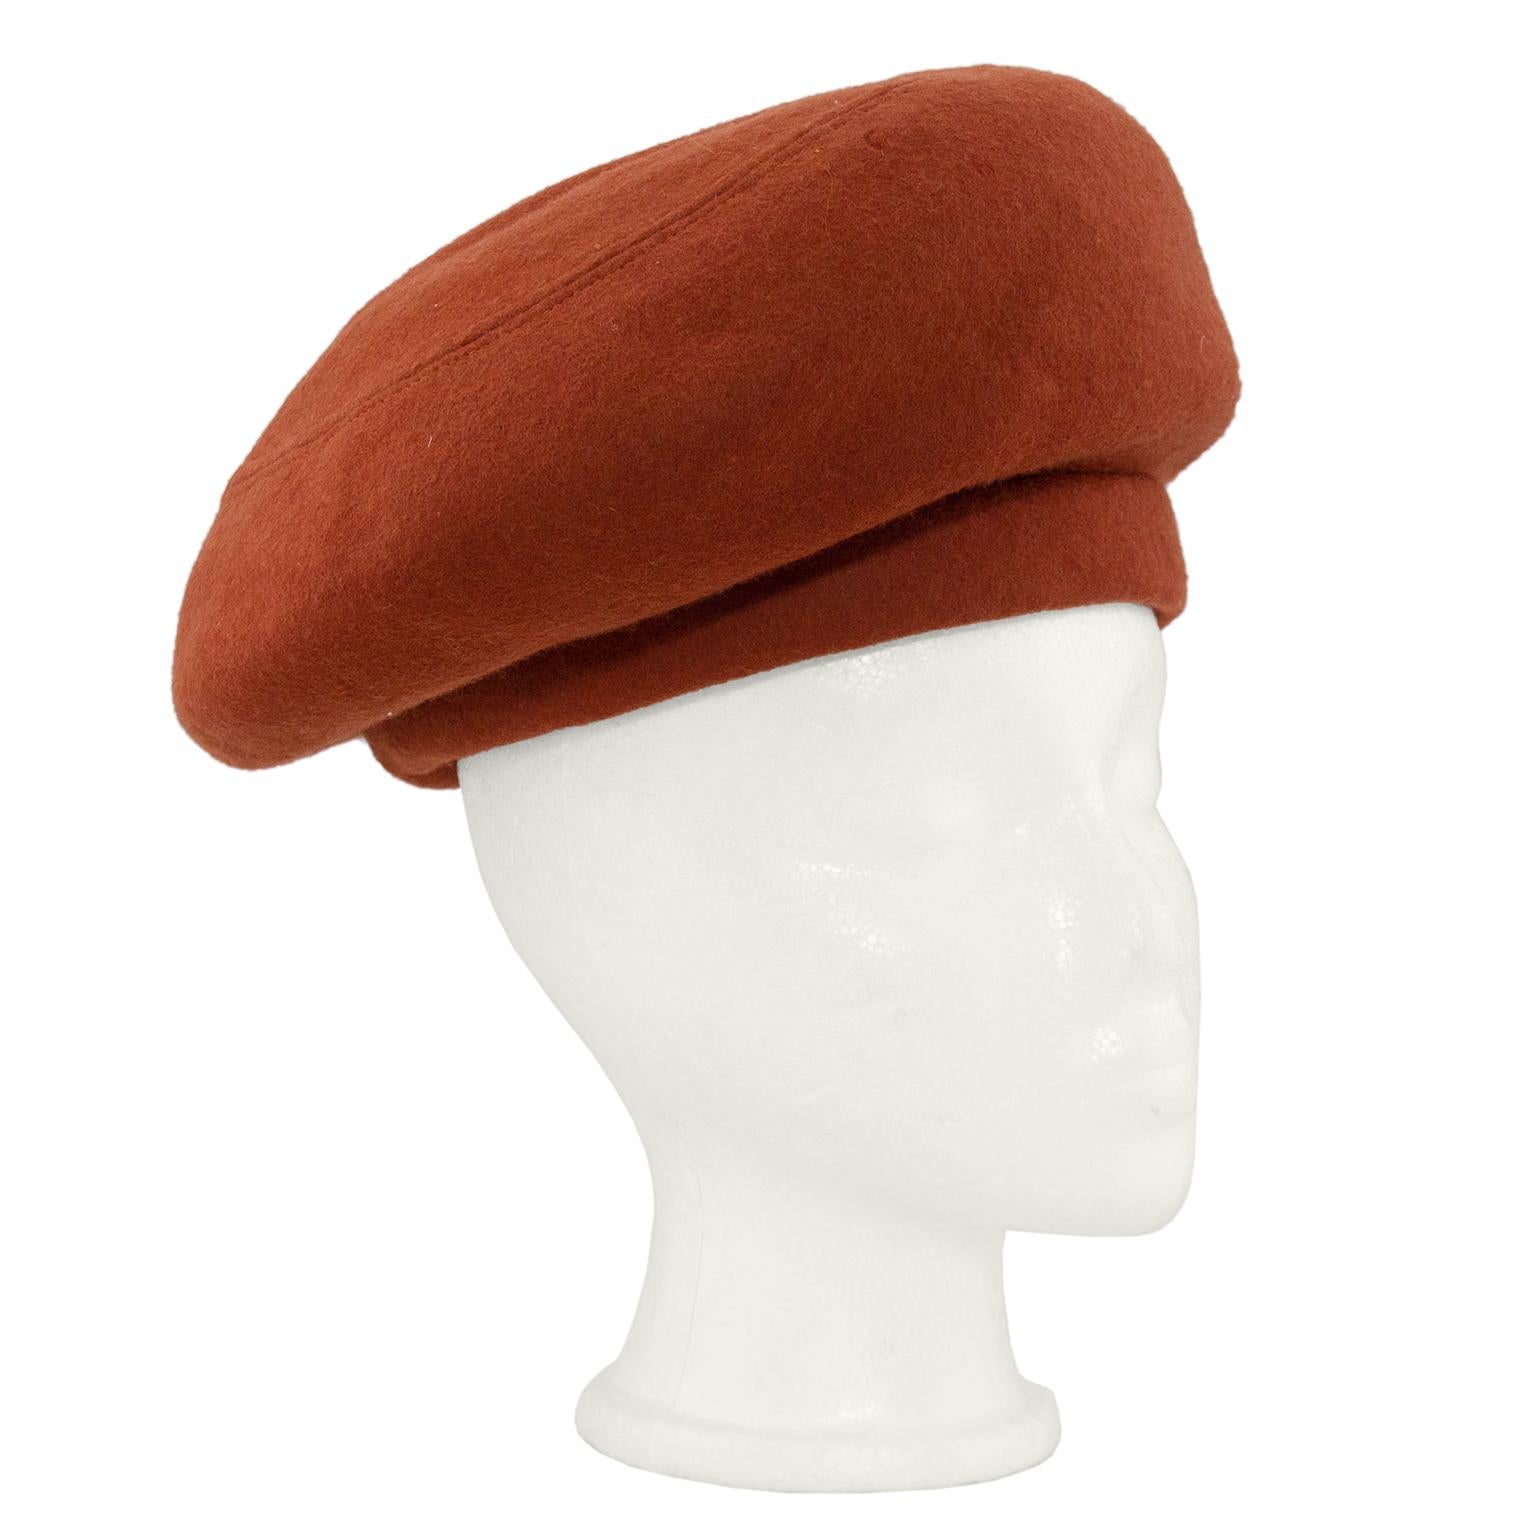 Die legendäre Madame Paulette, bekannt als die Hutdesignerin der Stars und Könige, hat diesen Hut für eine ebenso legendäre Künstlerin entworfen. Sie wurde Anfang der 80er Jahre passend zu einem Haute-Couture-Ensemble von Chanel entworfen und kann